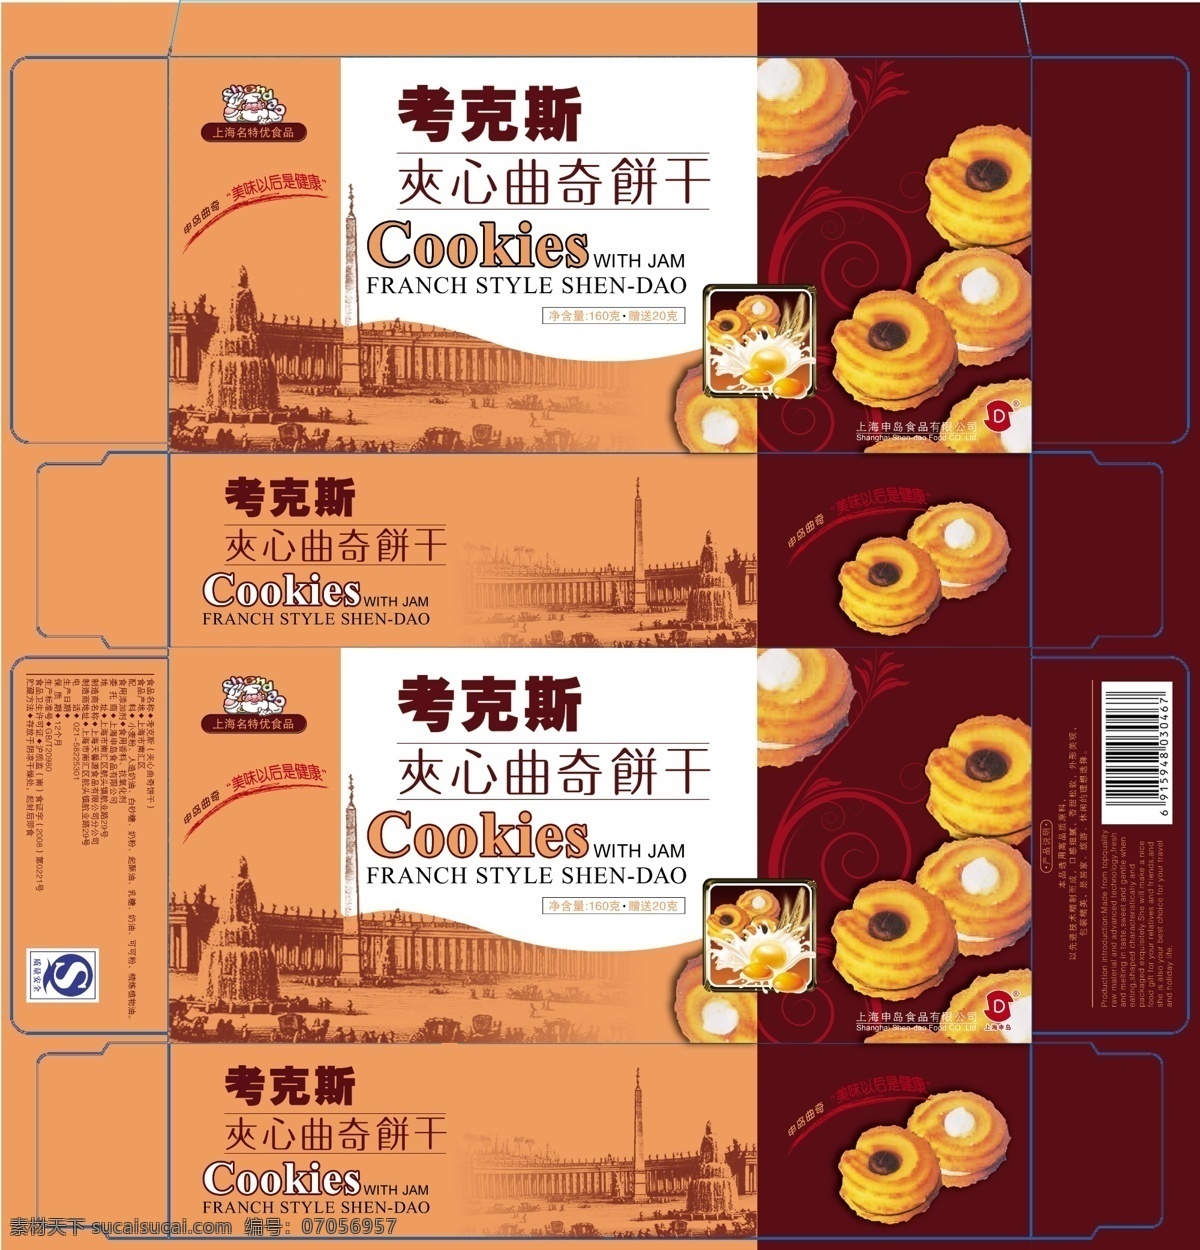 饼干 包装 模板下载 食品包装 包装设计 广告设计模板 源文件 饼干包装 曲奇 食品 黄色